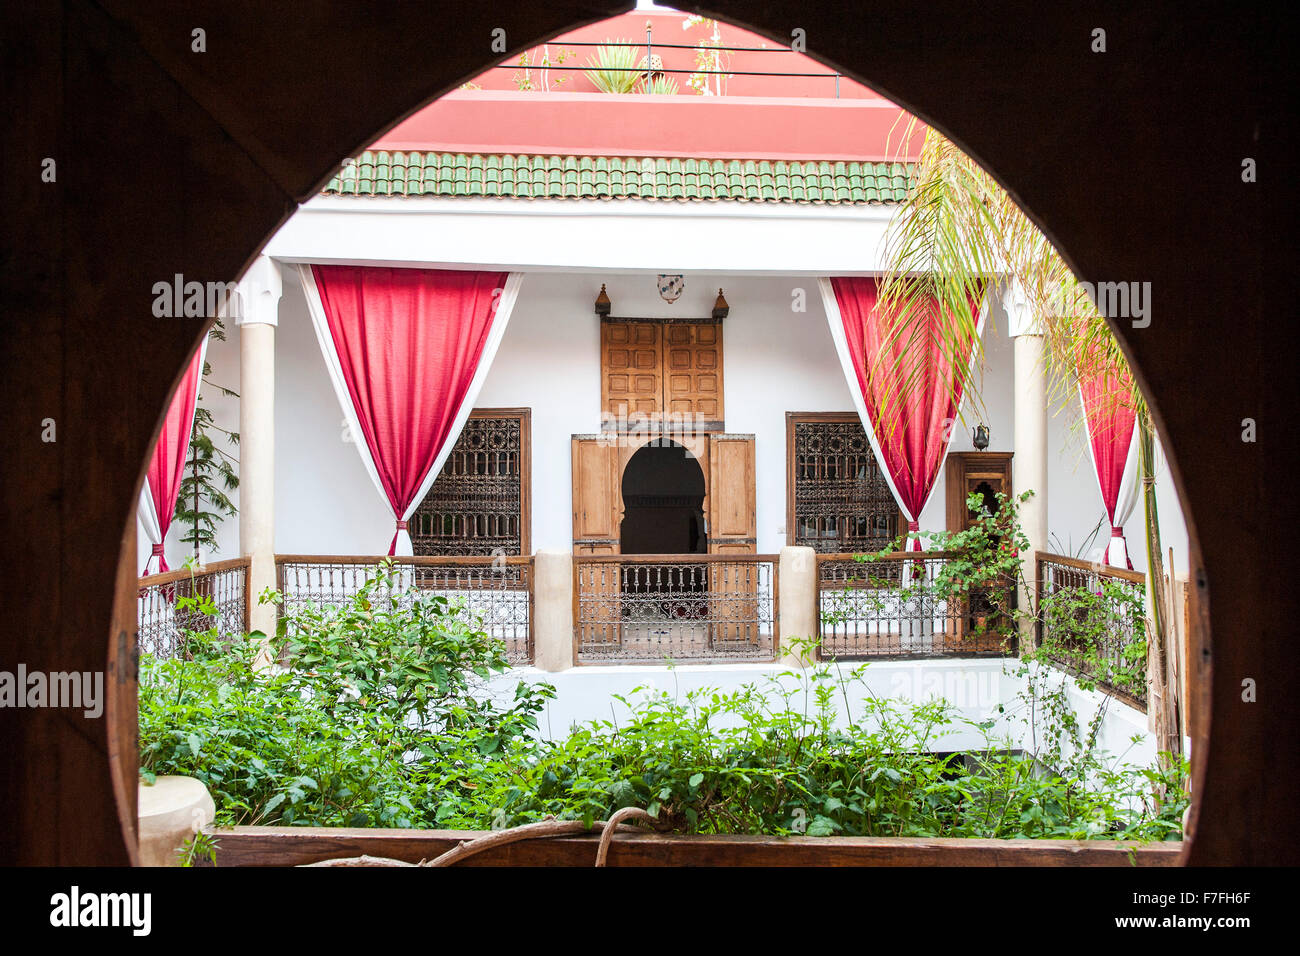 Courtyard of Riad El Zohar, Marrakech, Morocco. Stock Photo